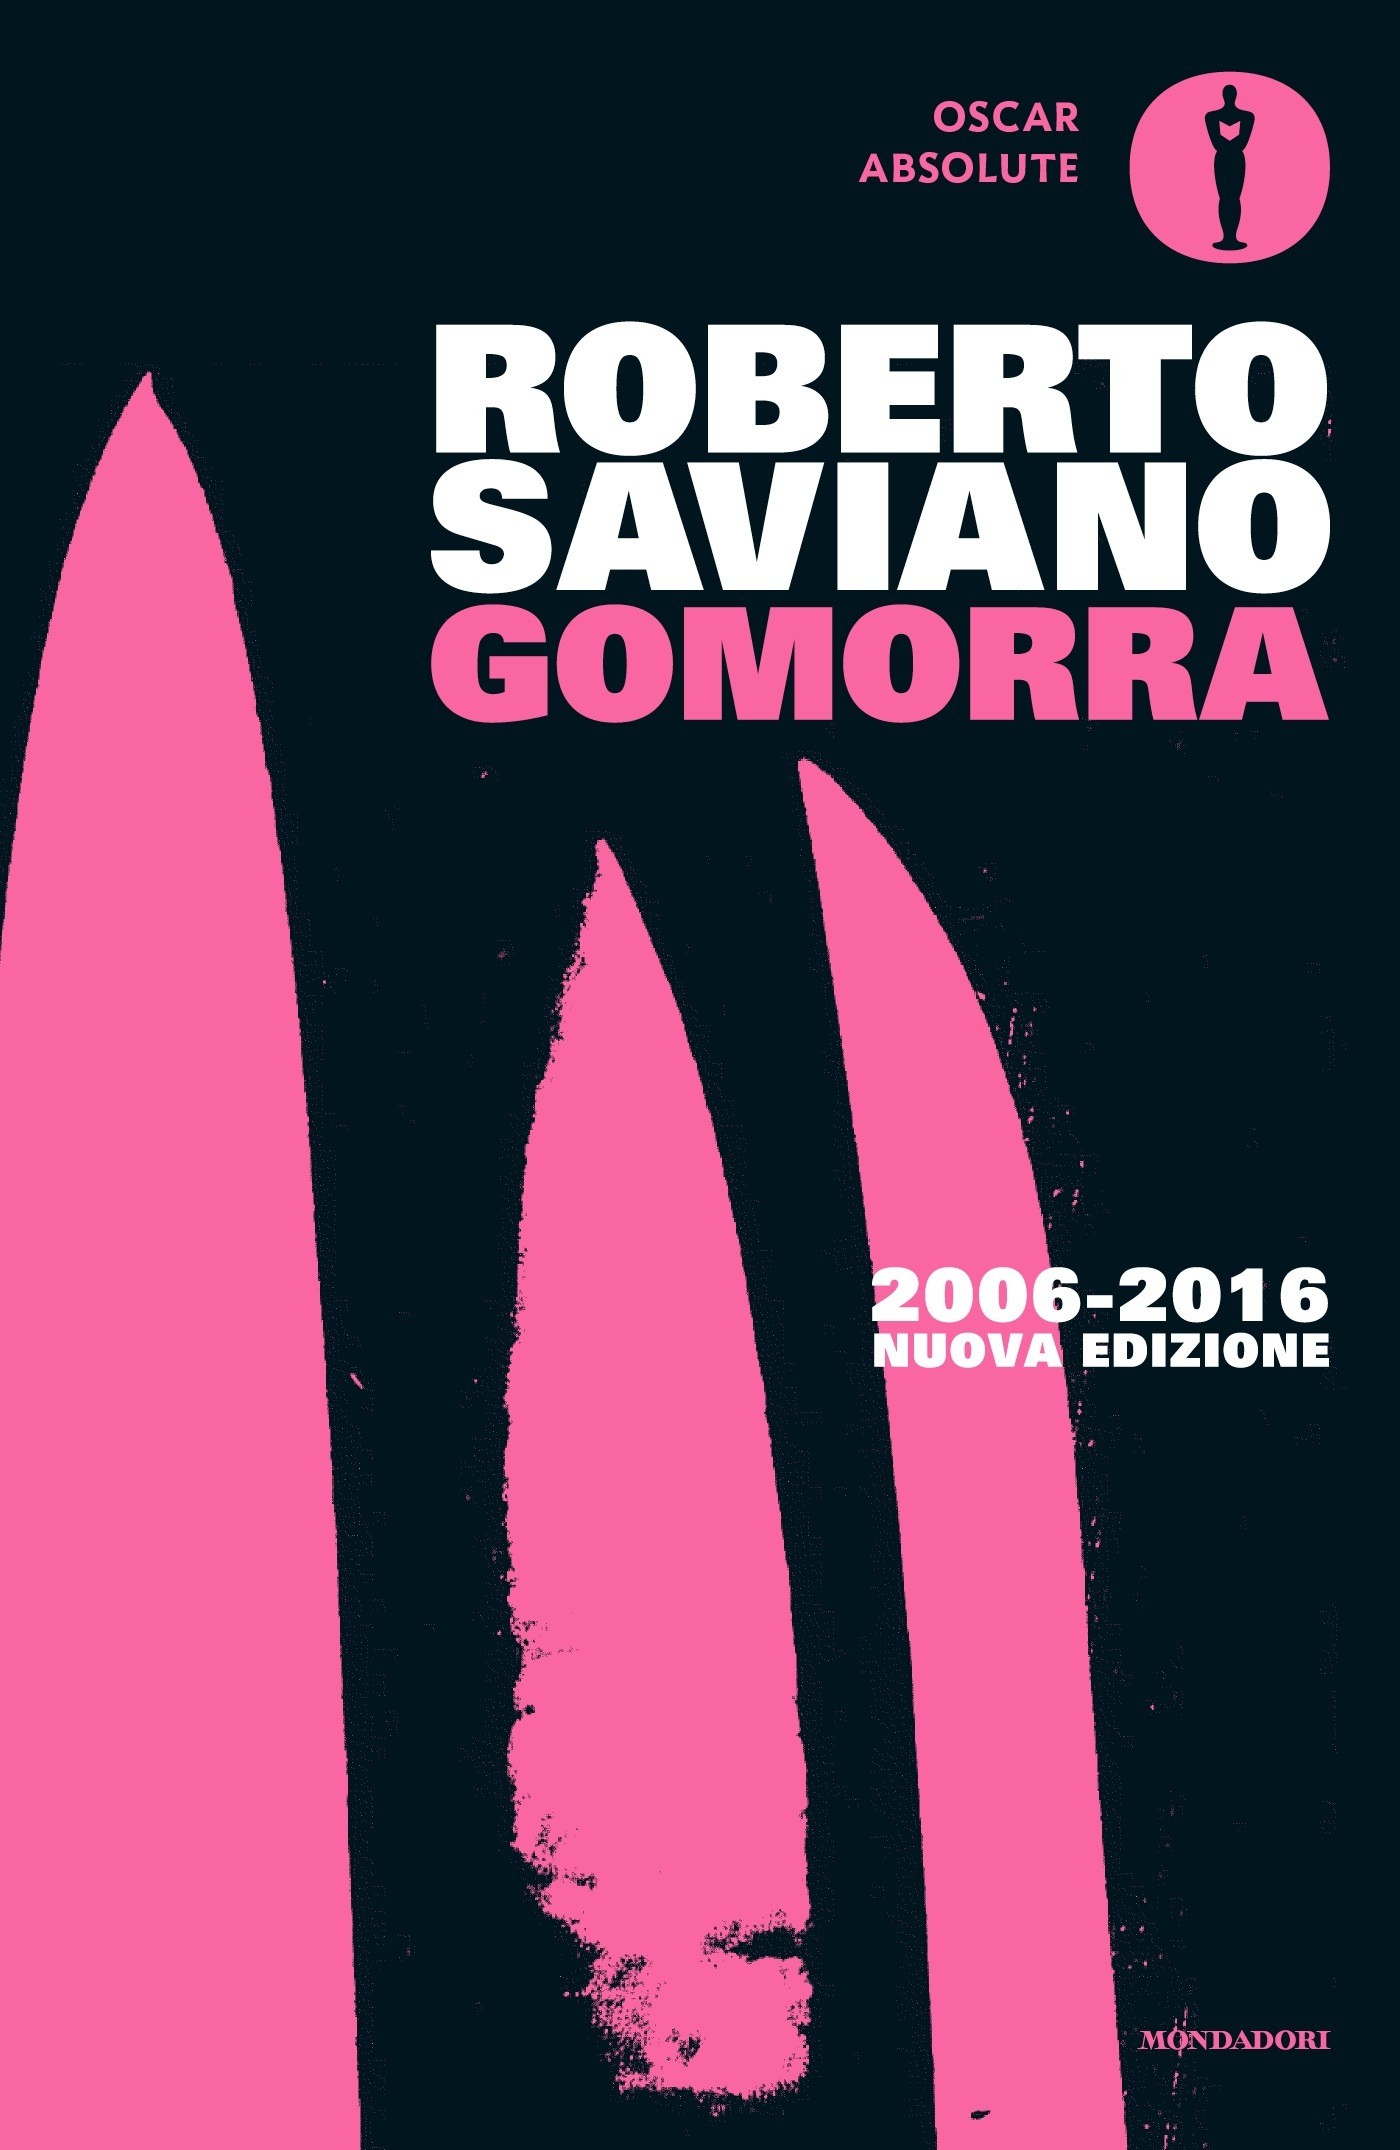 La cover del libro Gomorra di Roberto Saviano (Mondadori 2006)
